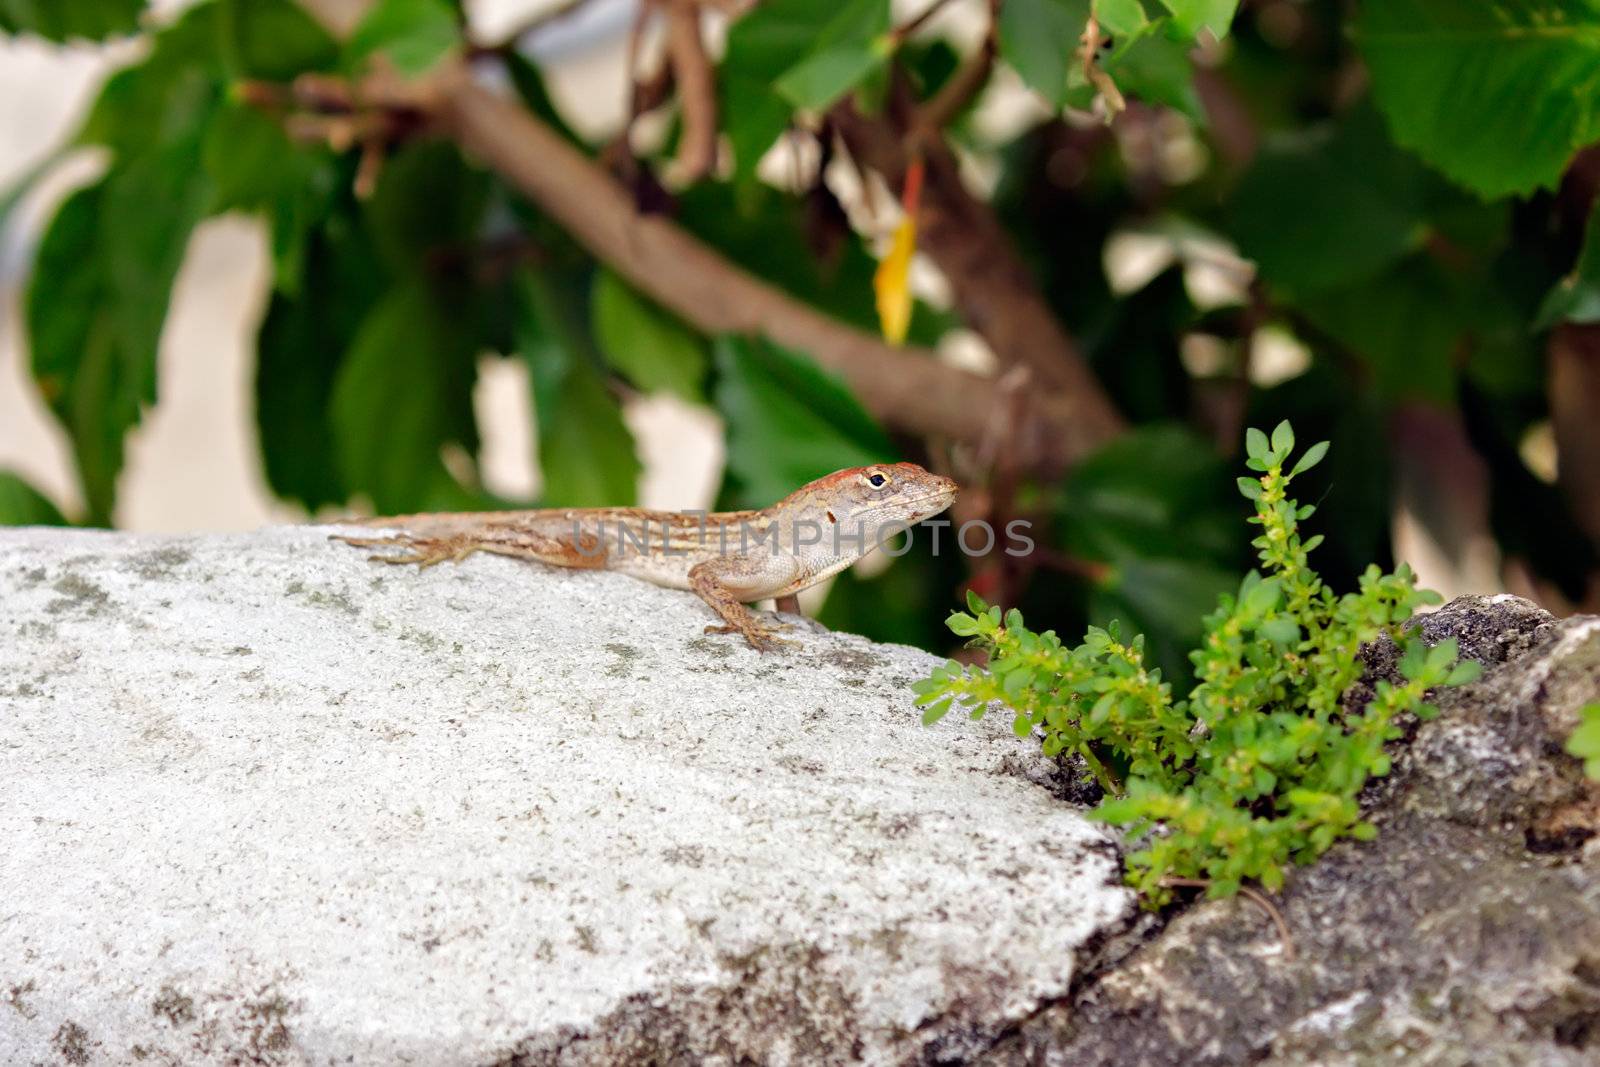 Lizard on a rock by Roka